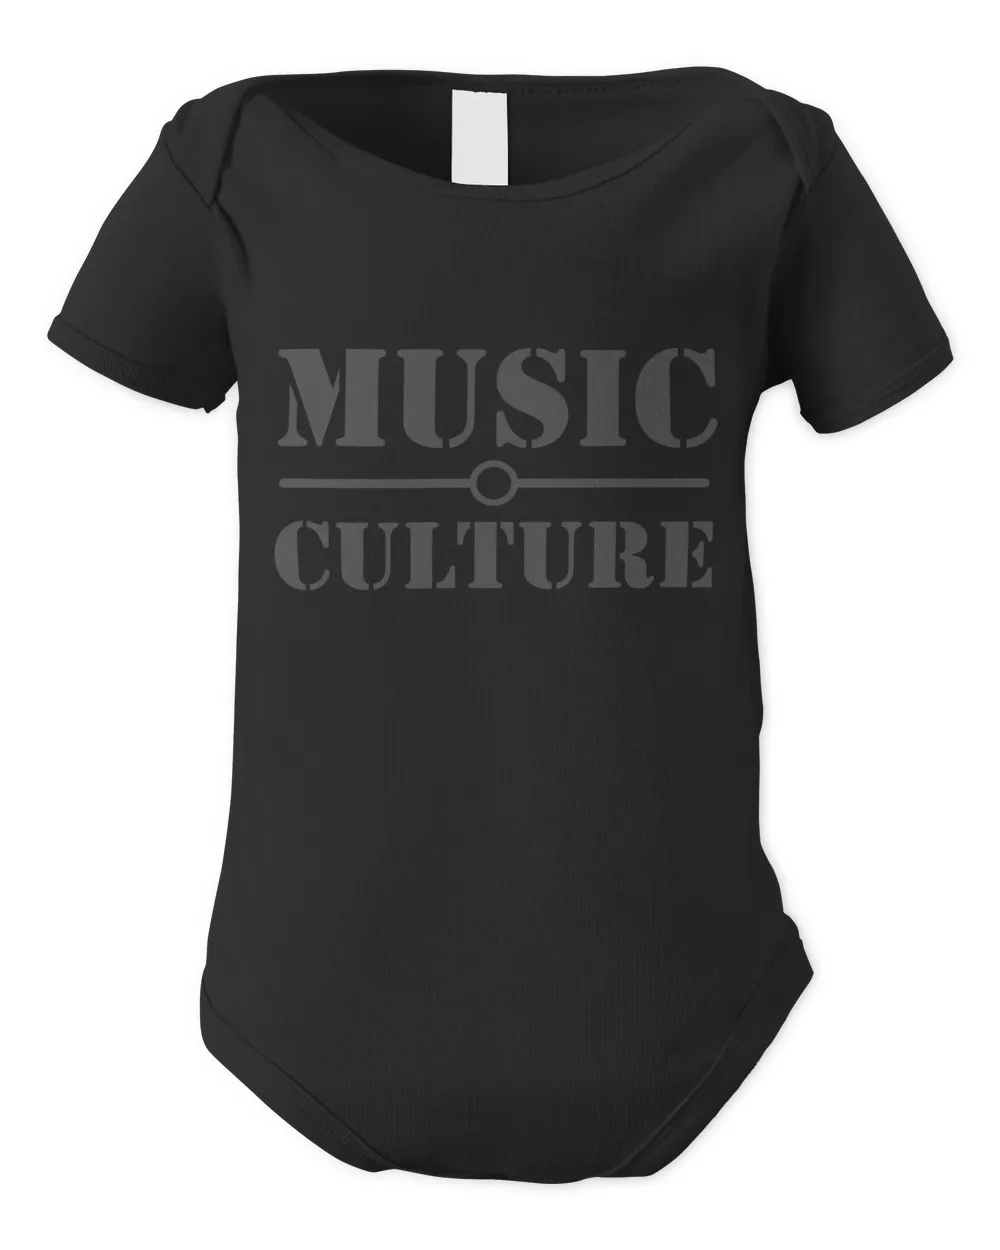 Music culture